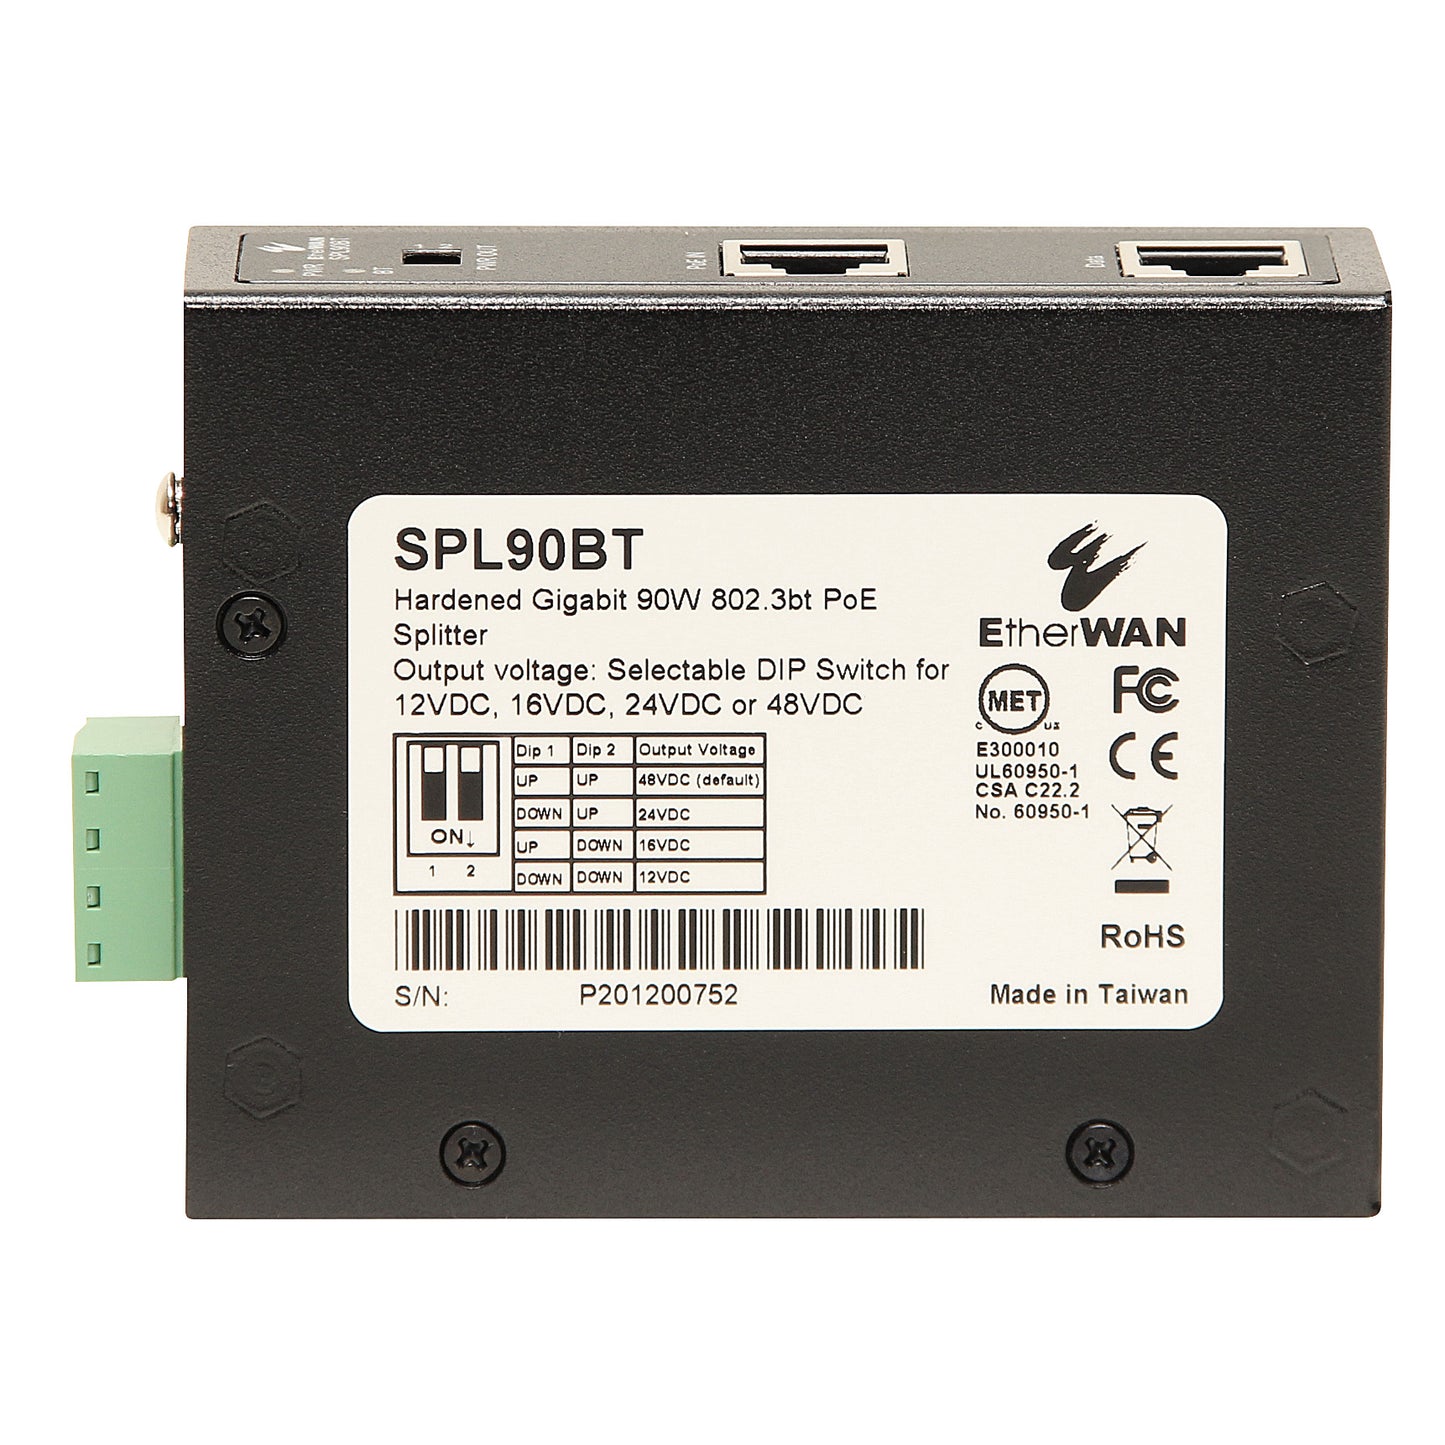 SPL90BT - Hardened Gigabit 90W PoE Splitter (10/100/1000BASE-T, 90W 802.3bt) Power Supply